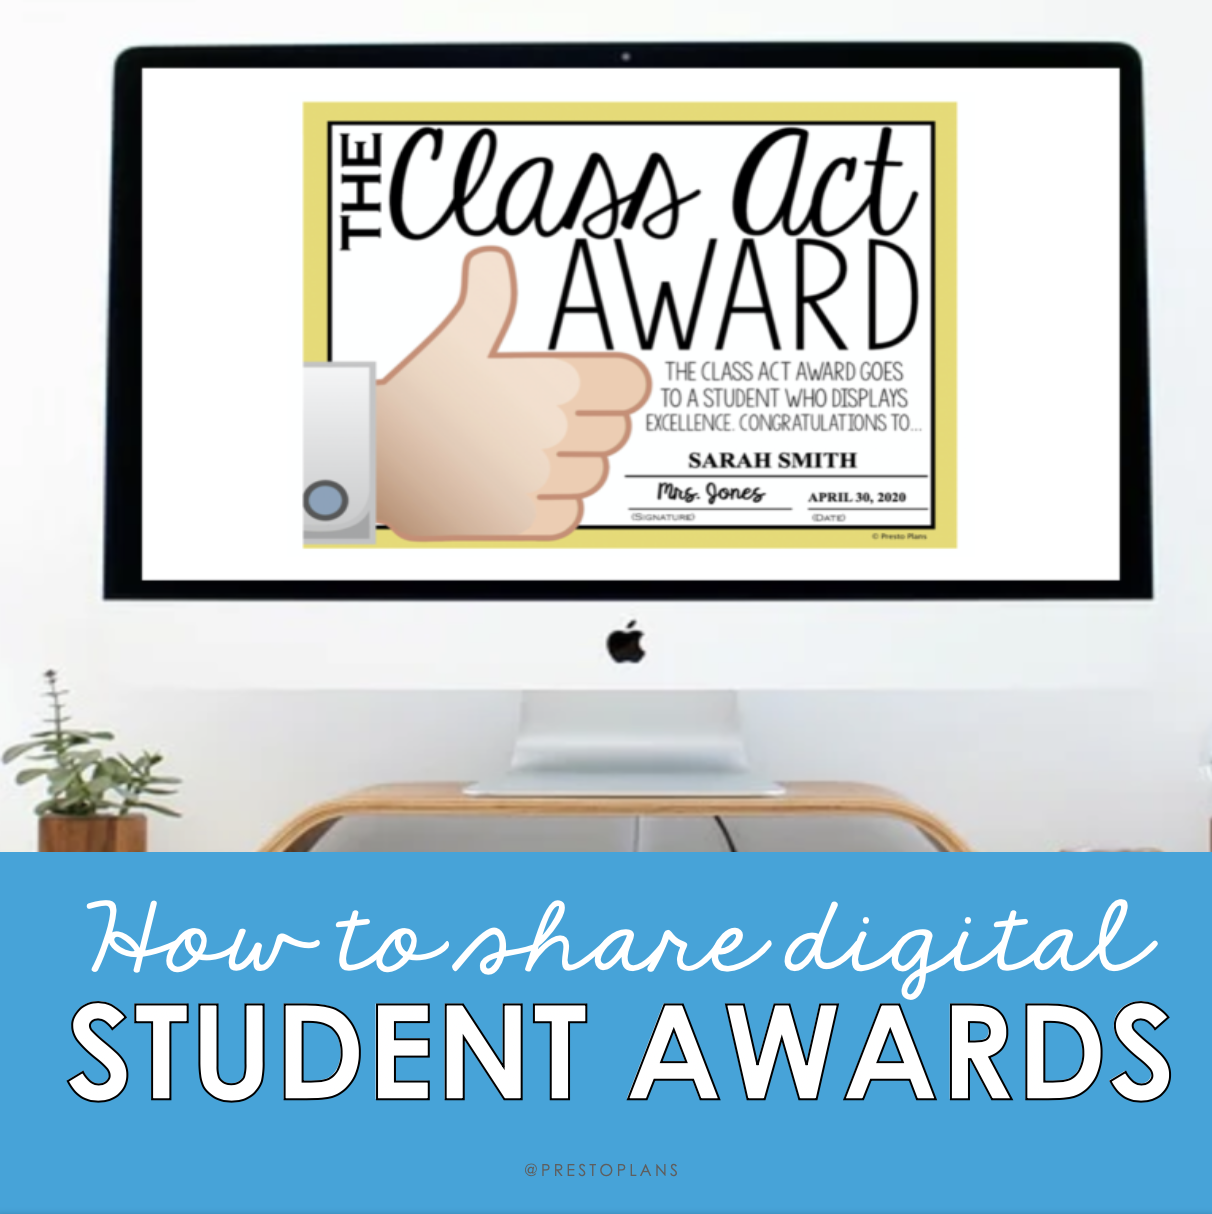 Sharing student awards digitally